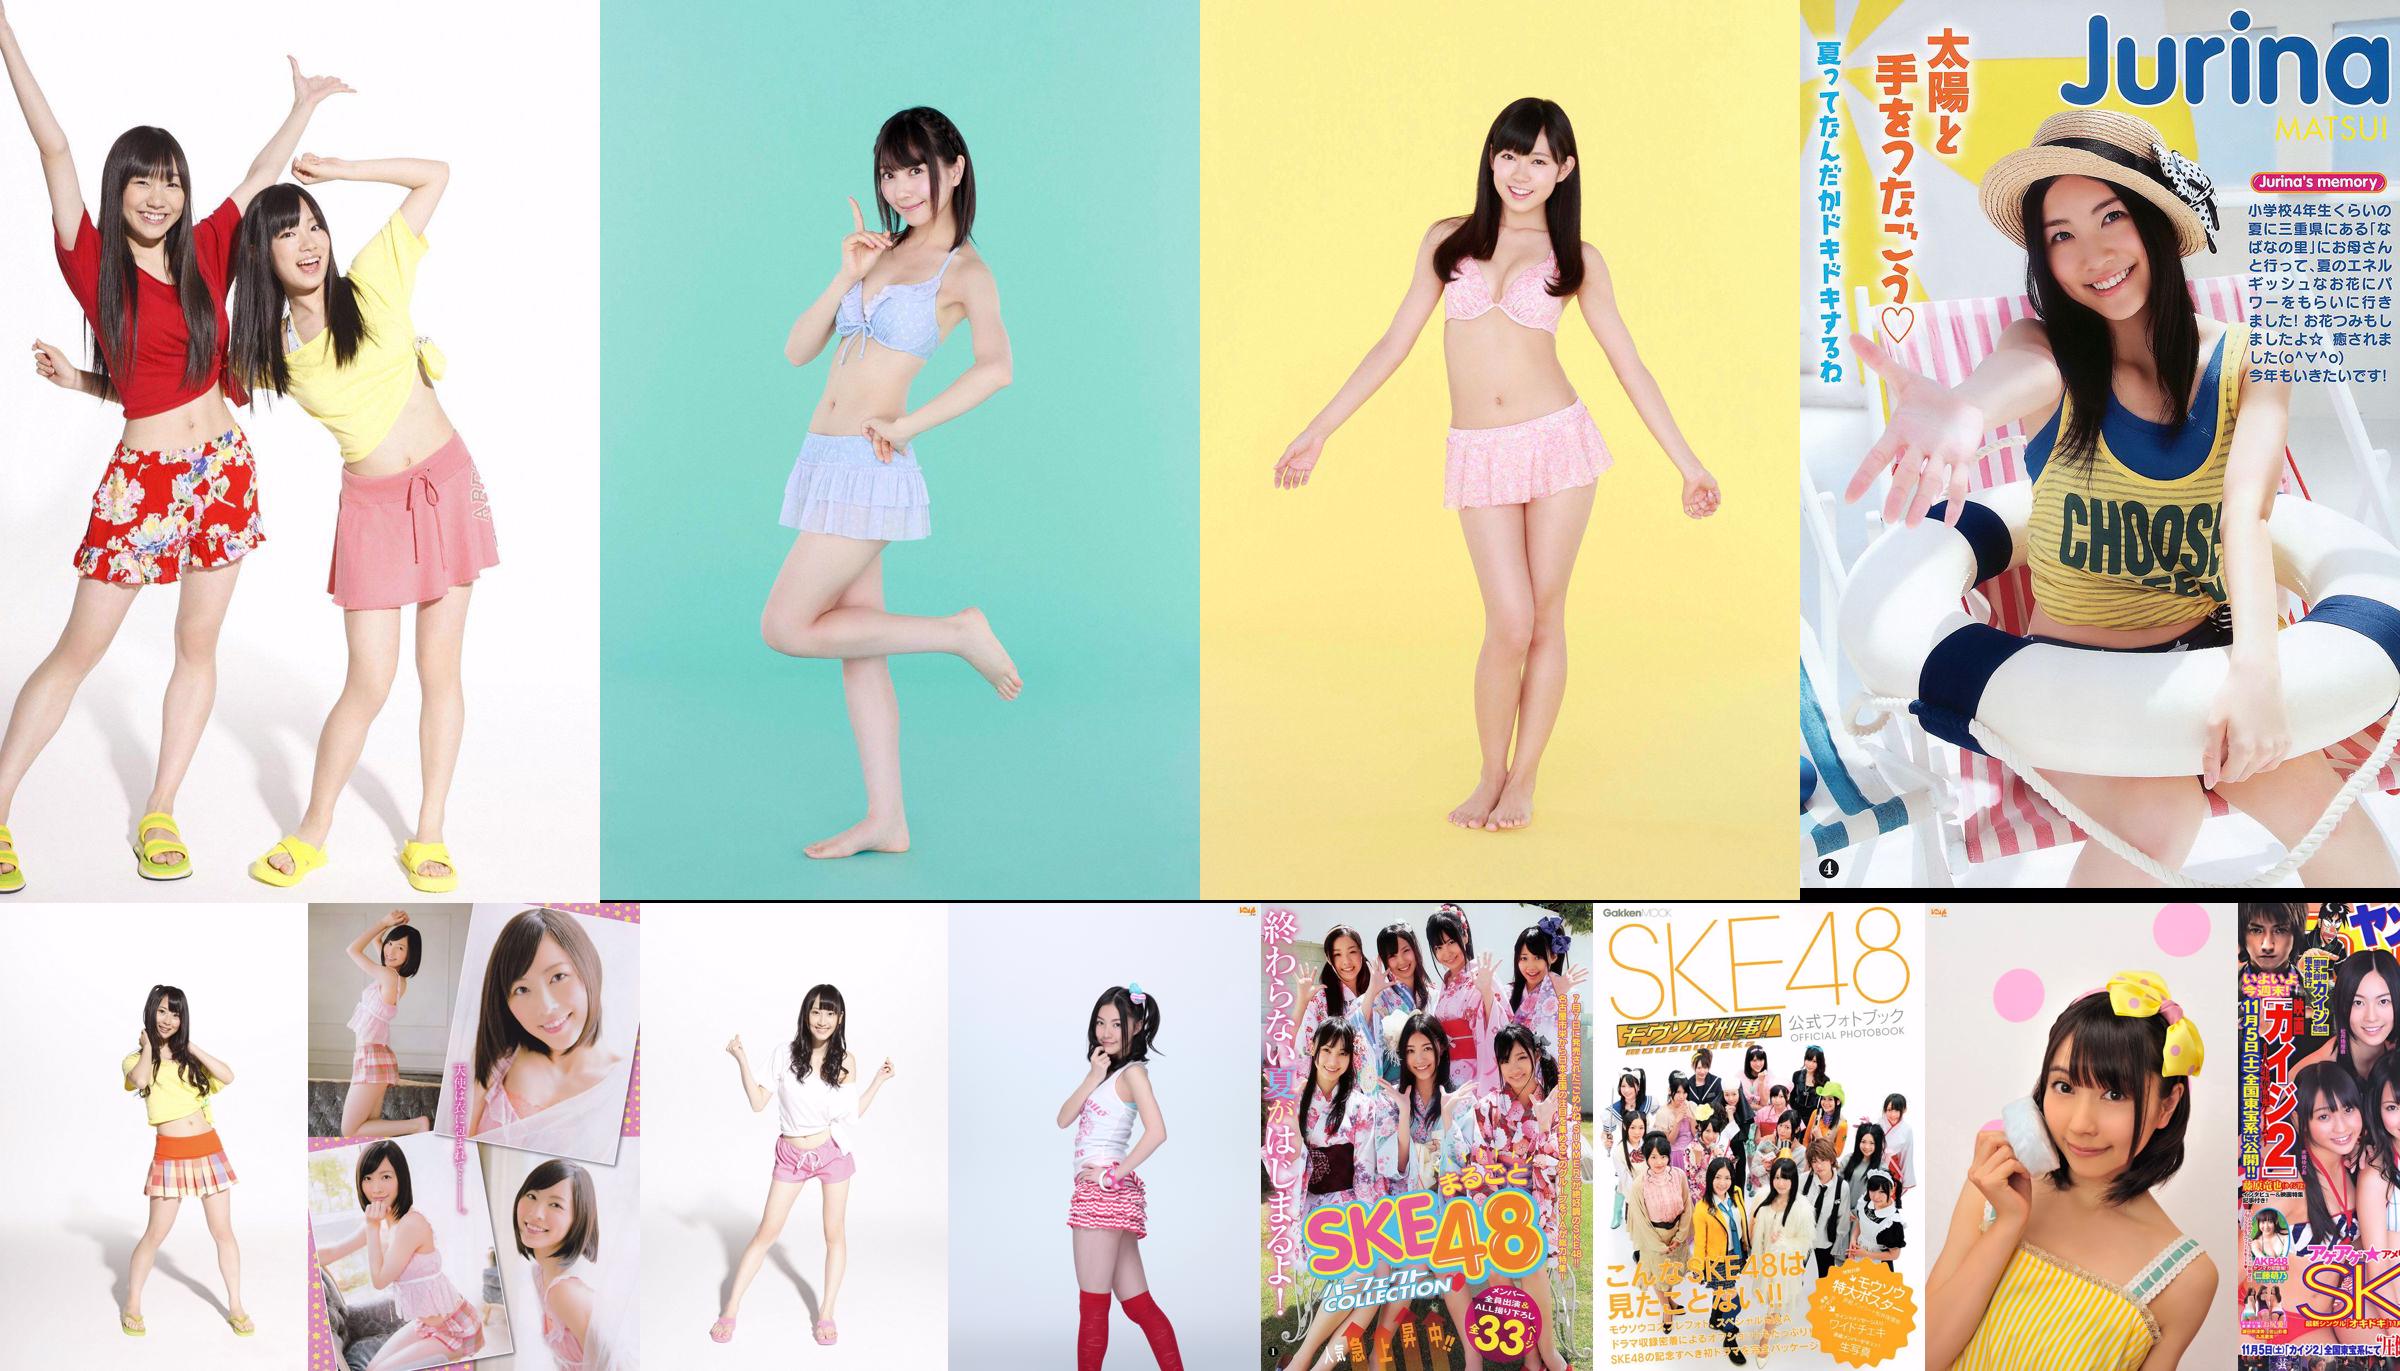 SKE48 Aikari Tree, Yoshioka Riho, Sariyama Mariko SAKURACO Tachibana Rin [Weekly Playboy] 2014 No.32 Photo Magazine No.dfbba3 หน้า 1